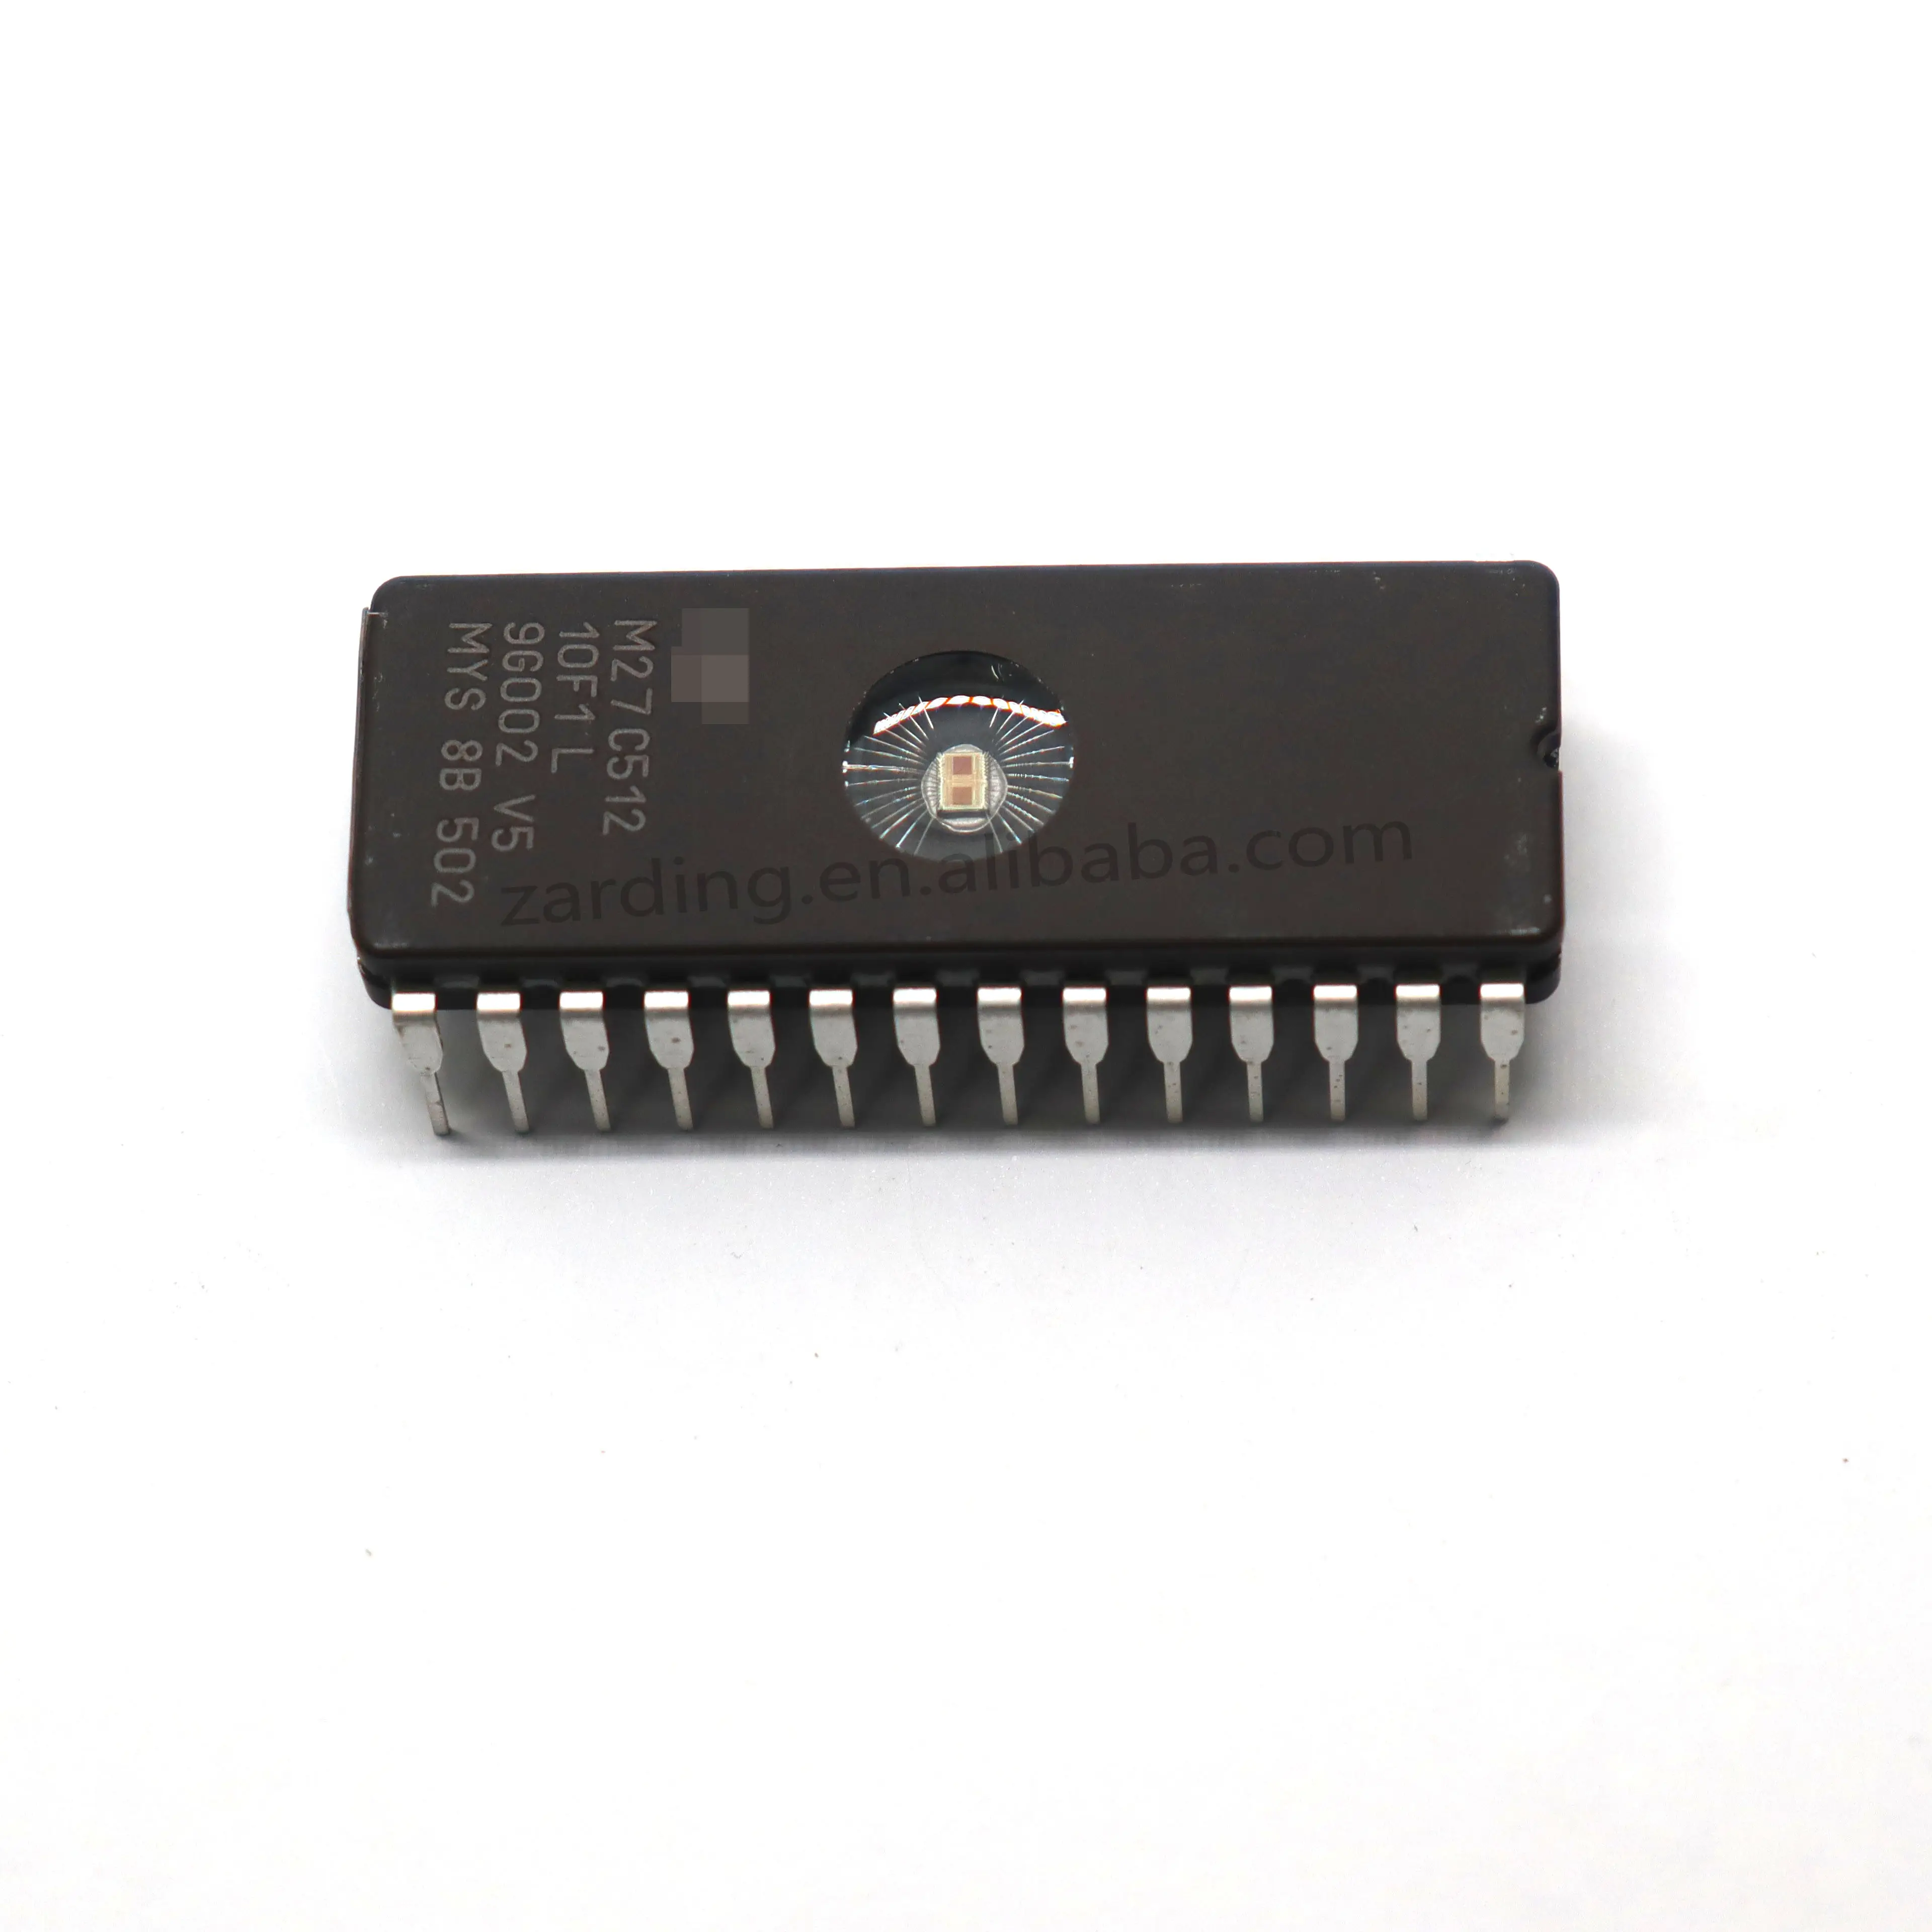 Zarding M27C512-10F1 mạch tích hợp IC chip bộ nhớ ICS eprom M27C512-10F1